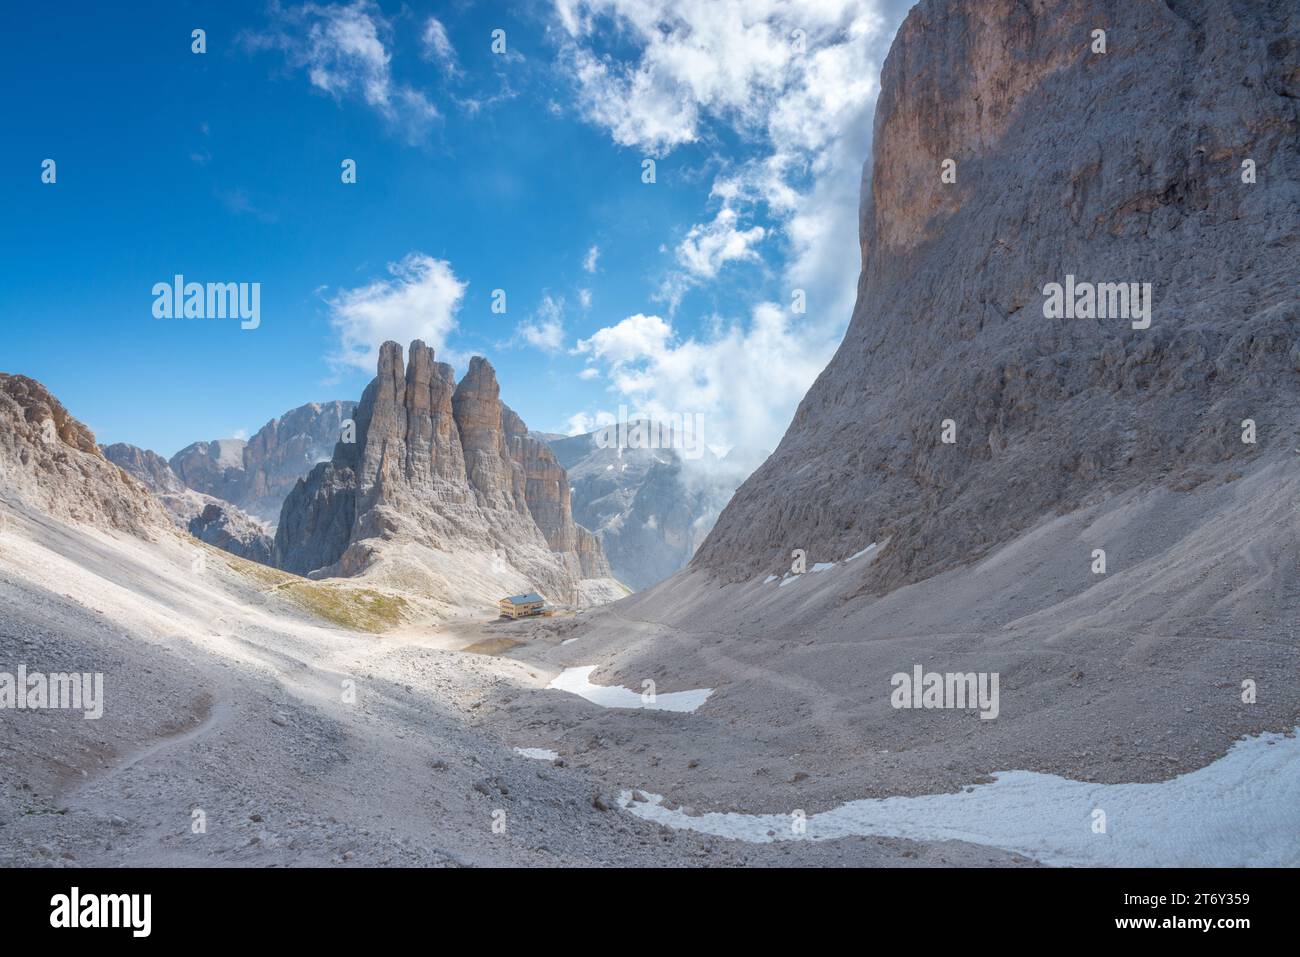 Maestose torri del Vajolet nel gruppo del Catinaccio delle Dolomiti, con rifugio Re Alberto e una ripida valle di ghiaia scolpita Foto Stock